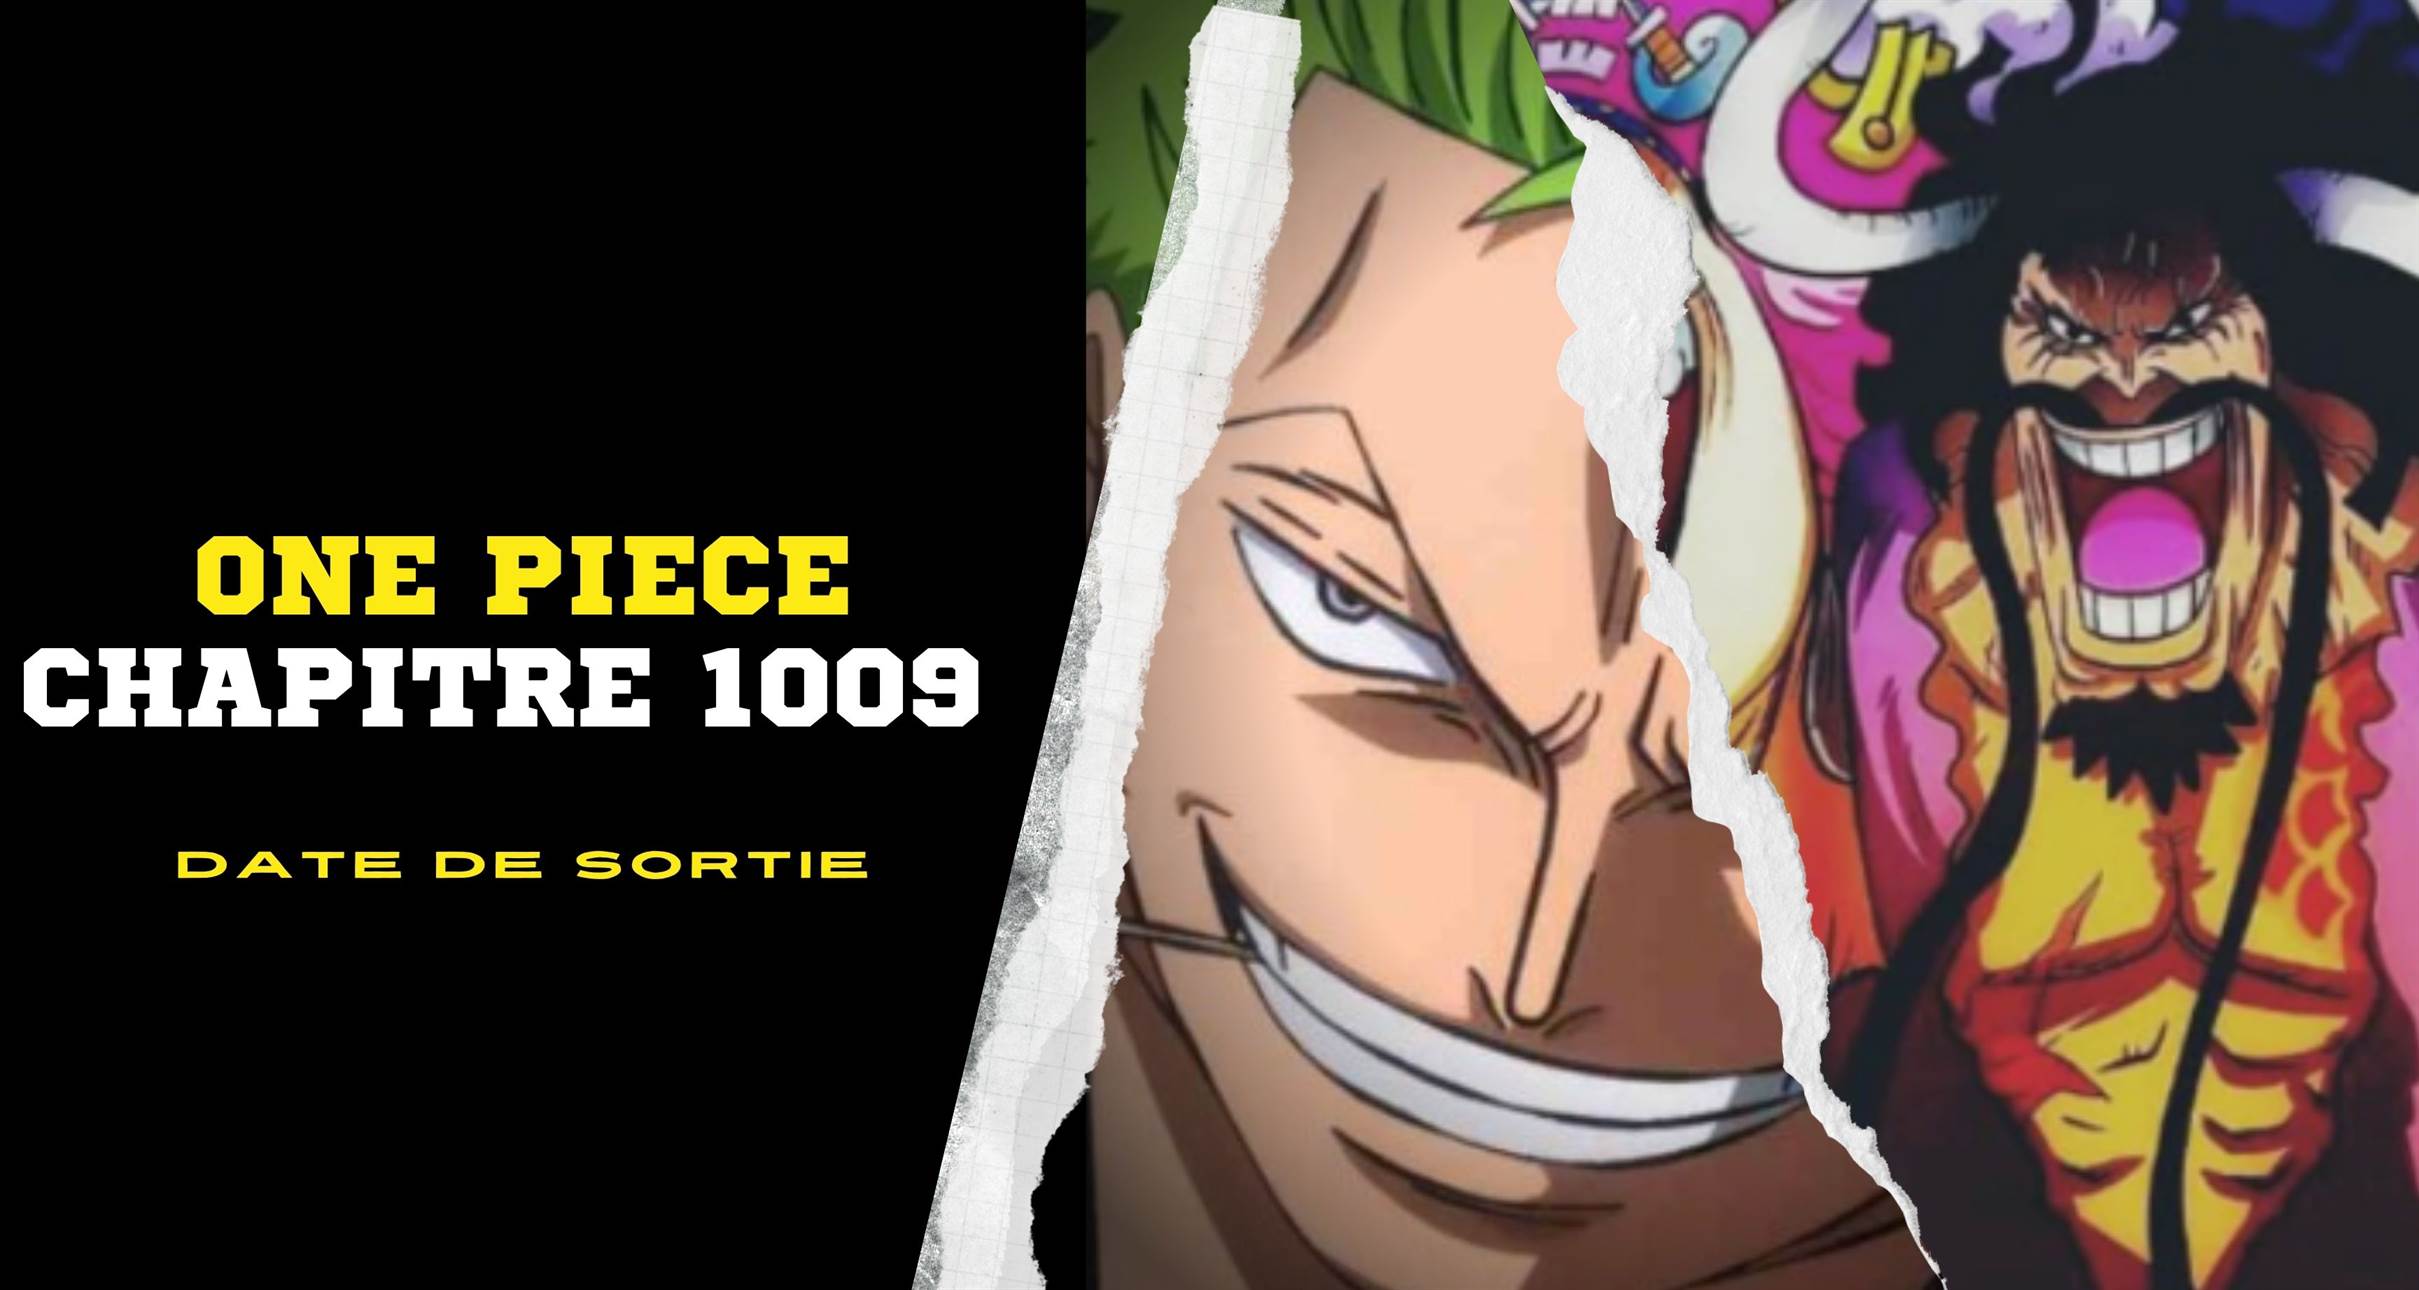 One Piece Chapitre 1009